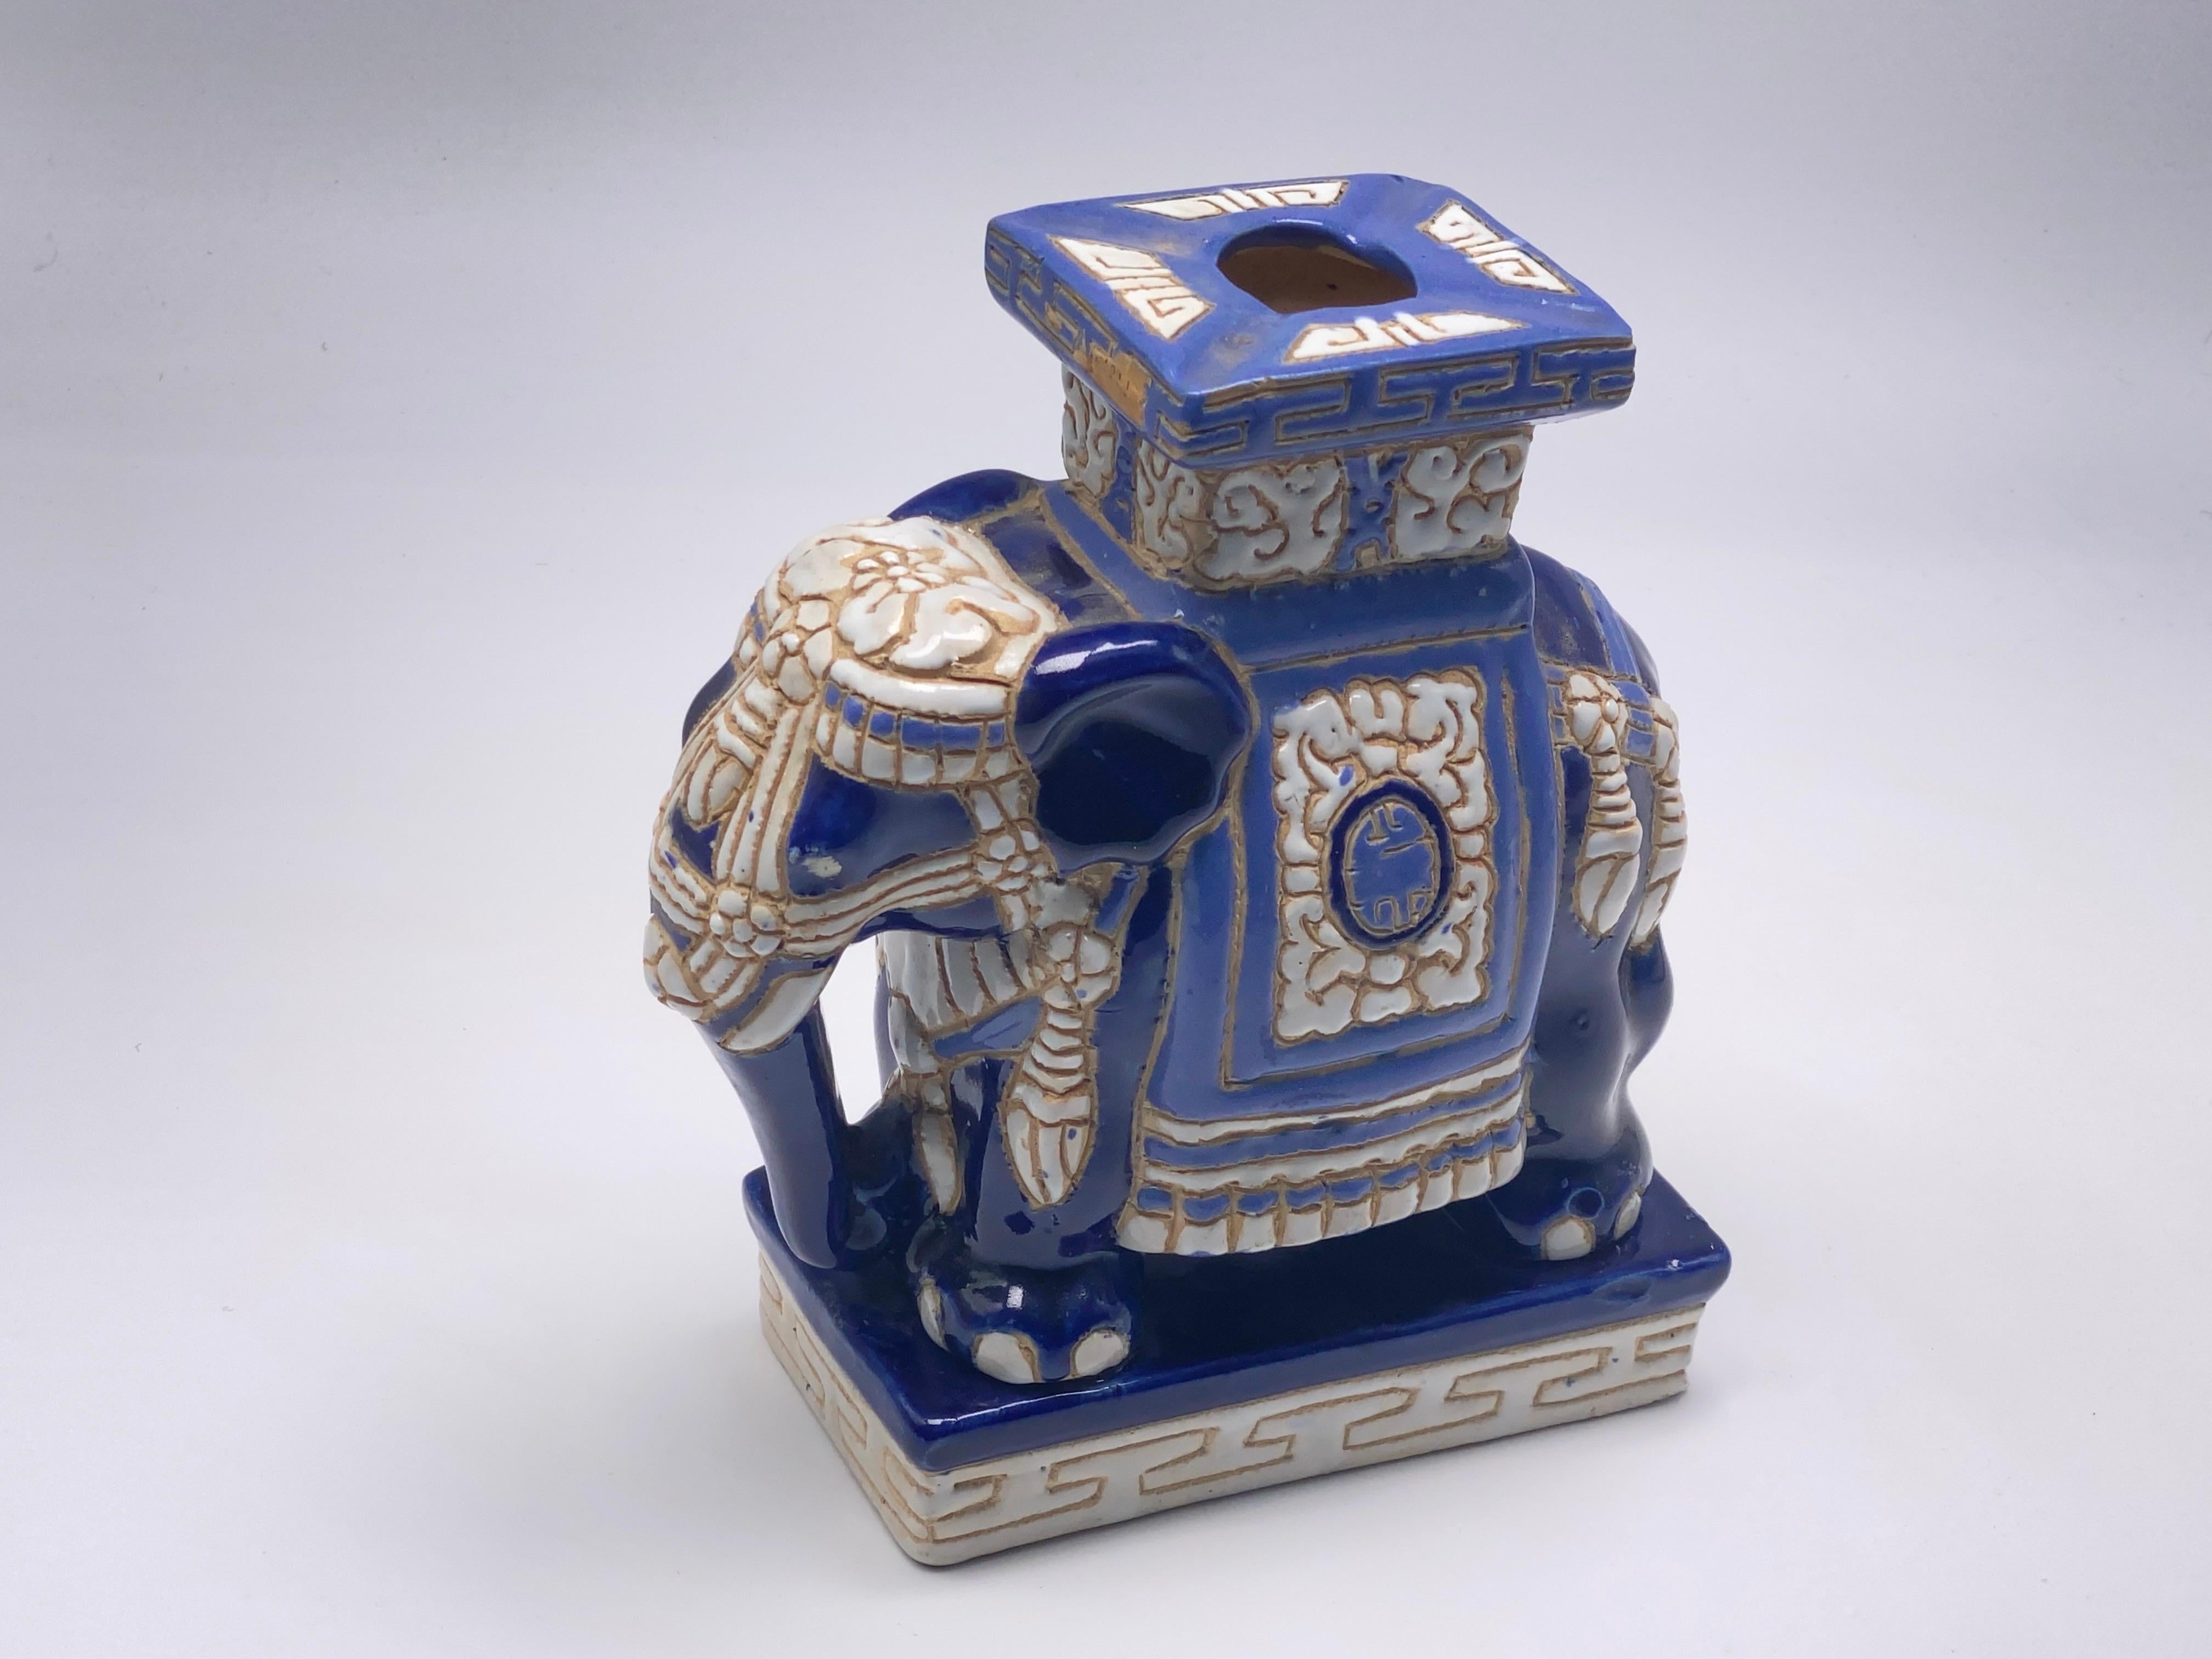 Mitte des 20. Jahrhunderts glasierte Keramik Elefant Garten Hocker, Blumentopf.
Handgefertigt aus Keramik. Eine schöne Ergänzung für Ihr Haus, Ihre Terrasse oder Ihren Garten. Dies ist in gutem Zustand, mit einigen Chips, blaue Farbe.